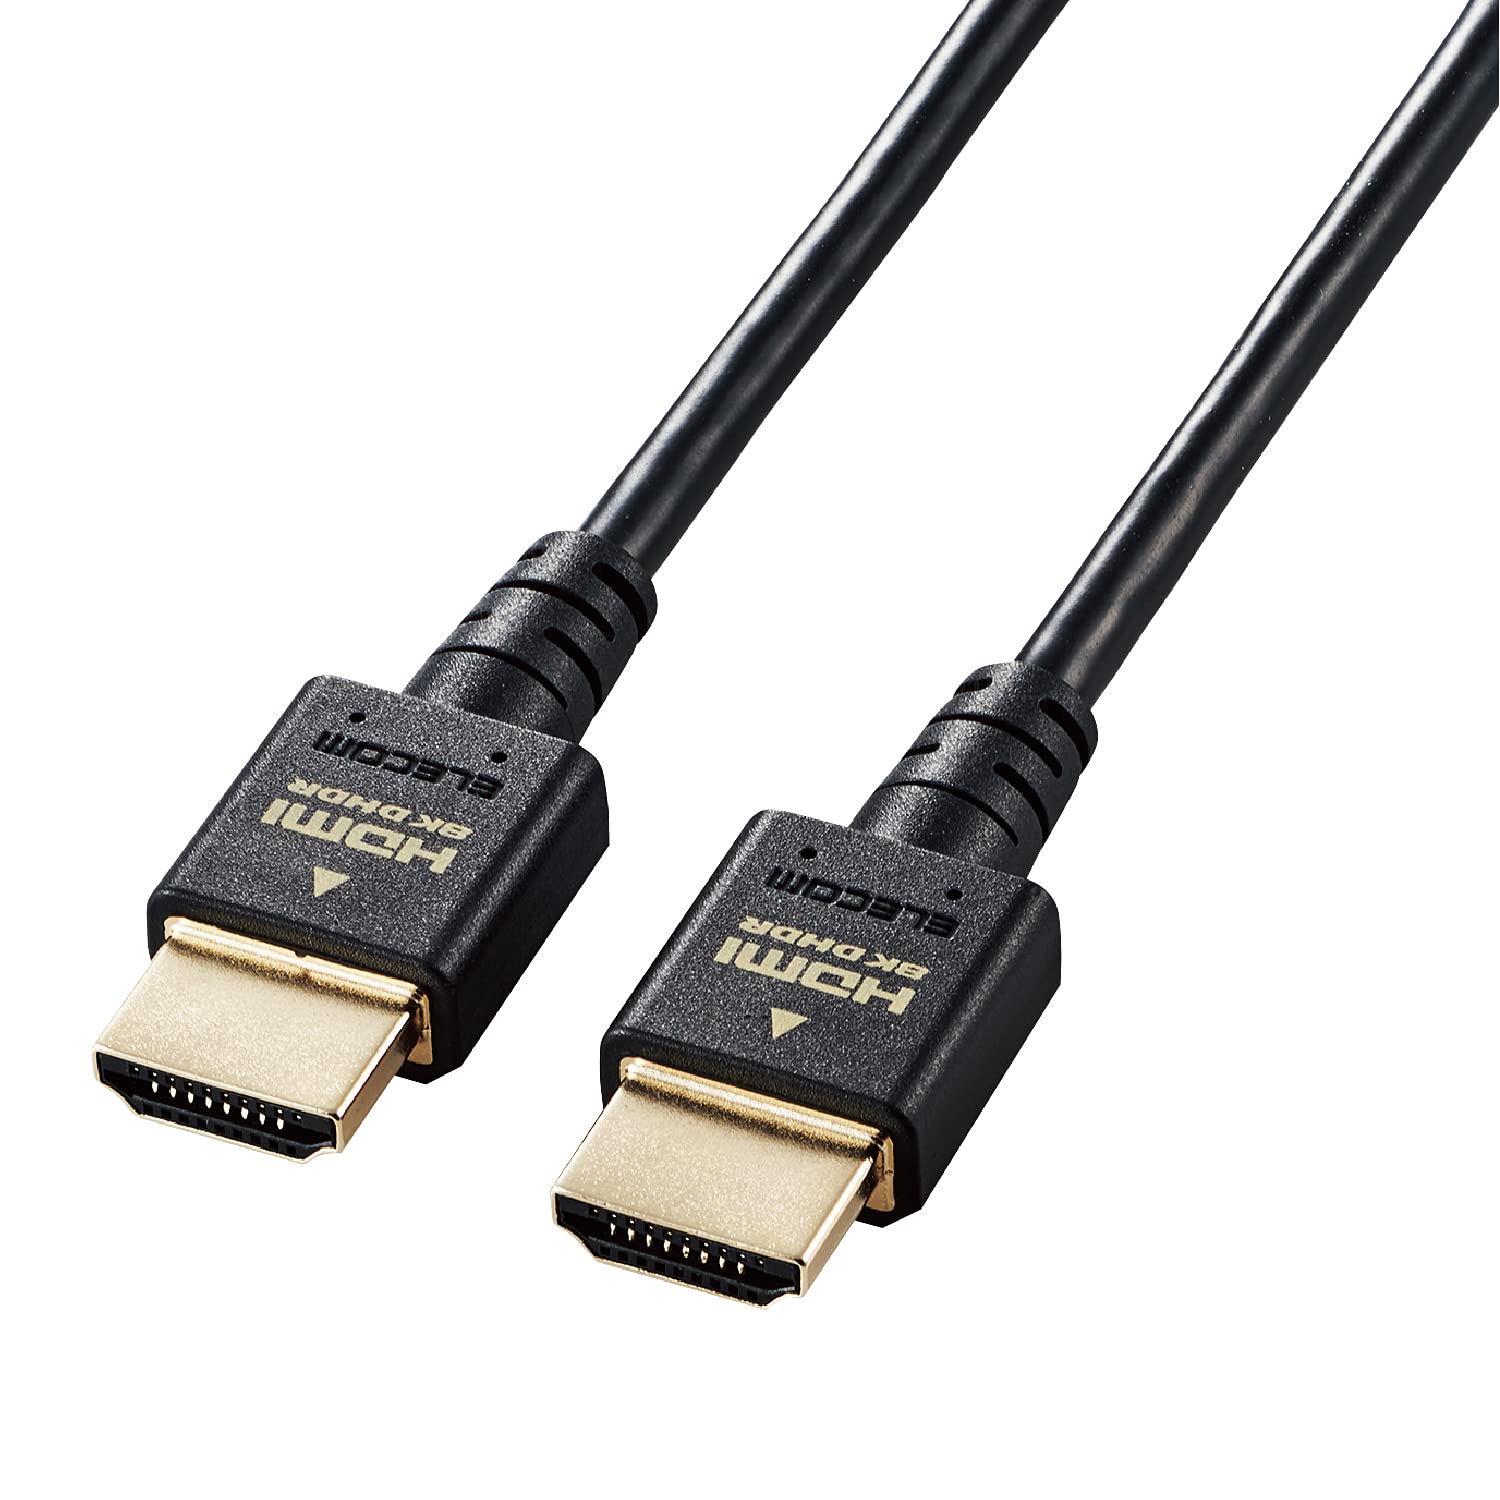 エレコム HDMI 2.1 ケーブル スリム ウルトラハイスピード 1.5m Ultra High Speed HDMI Cable認証品 8K(60Hz) 4K(120Hz) 48Gbps 超高速